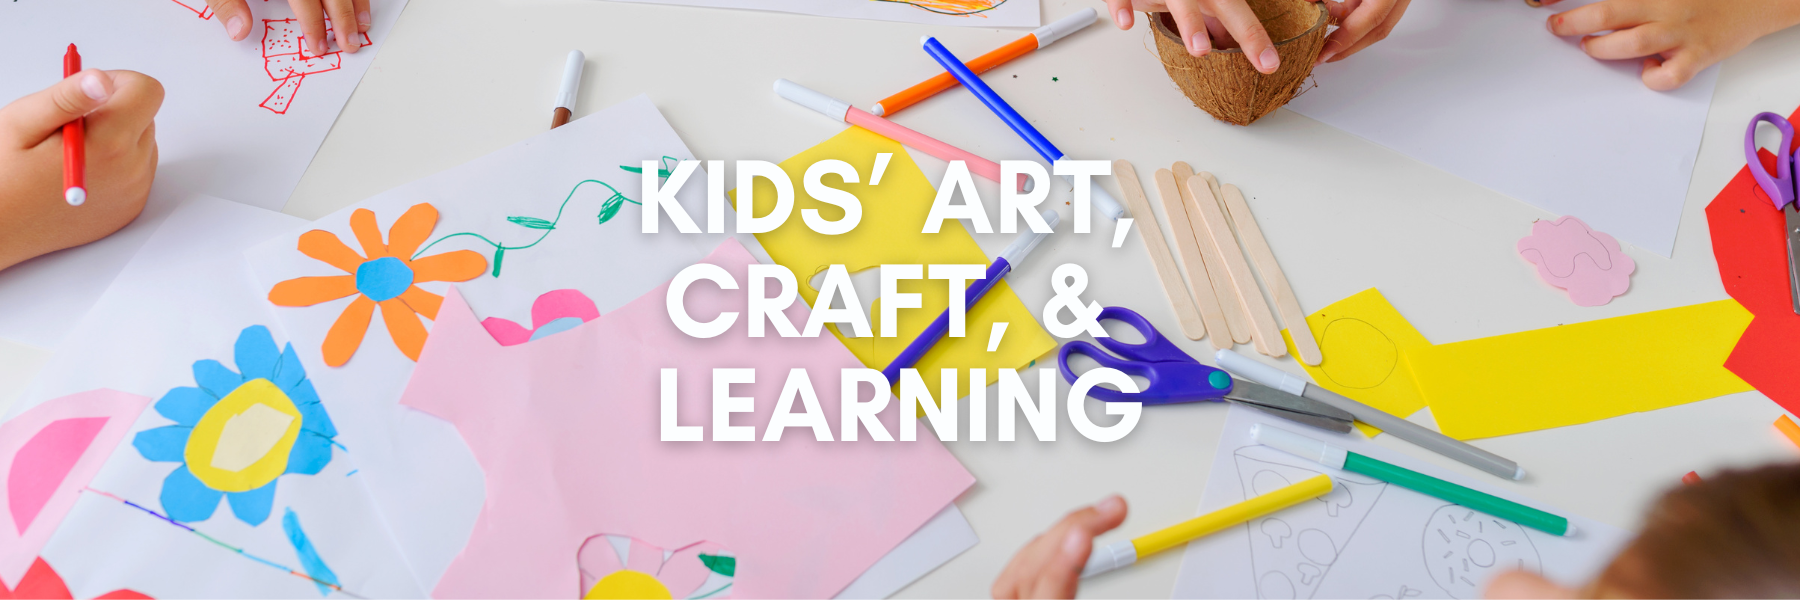 Kids Art, Craft & Learning | Hobby Land